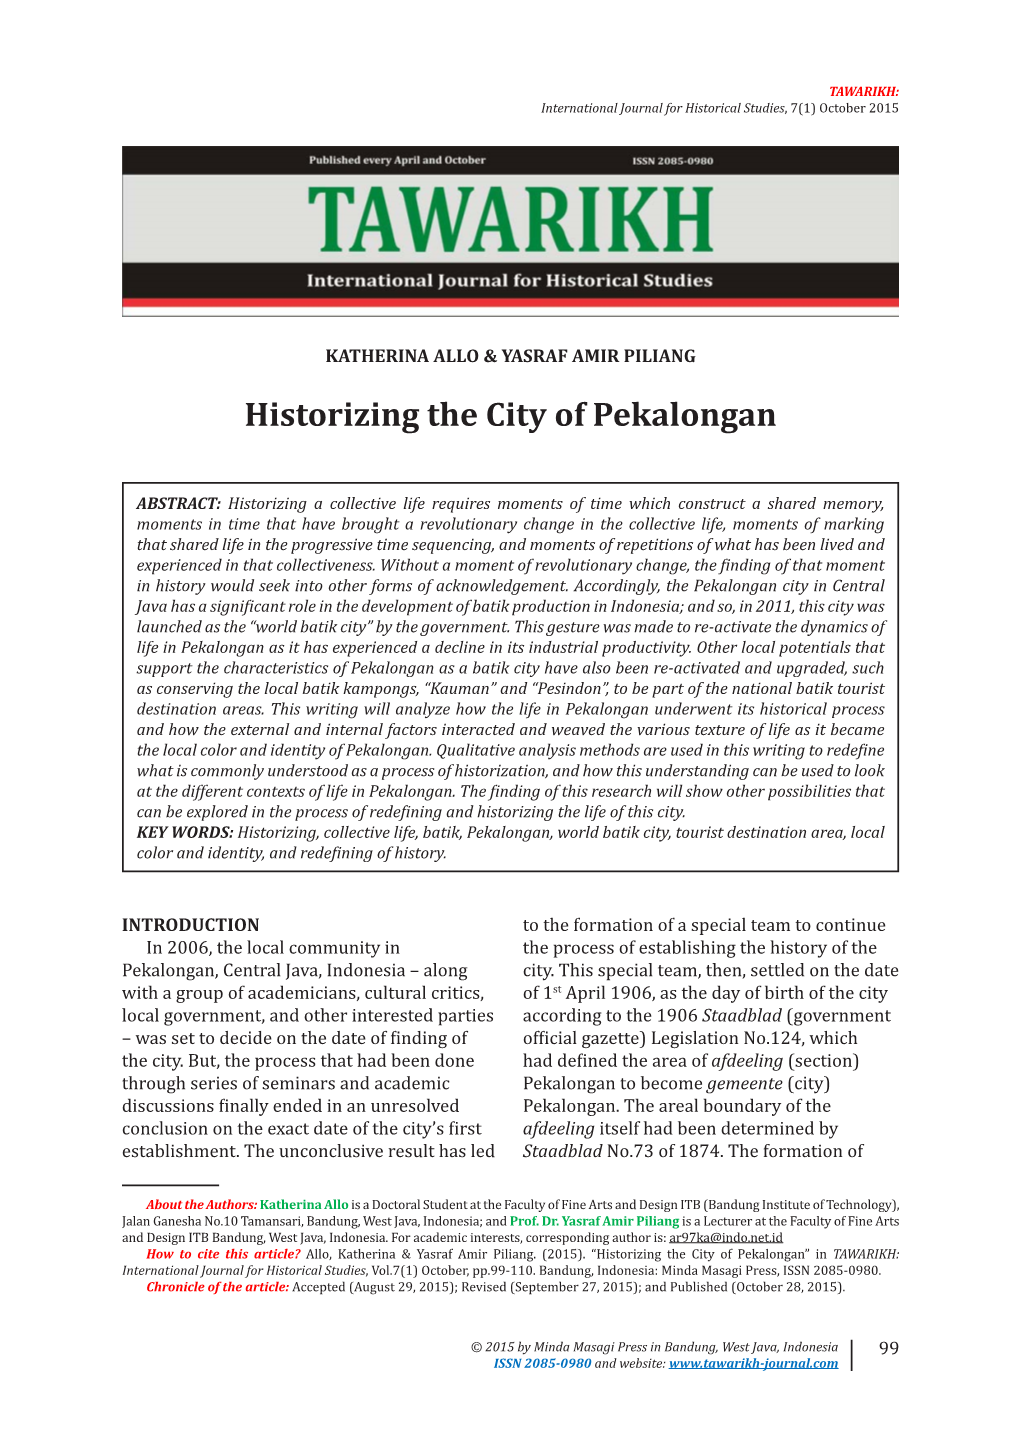 Historizing the City of Pekalongan